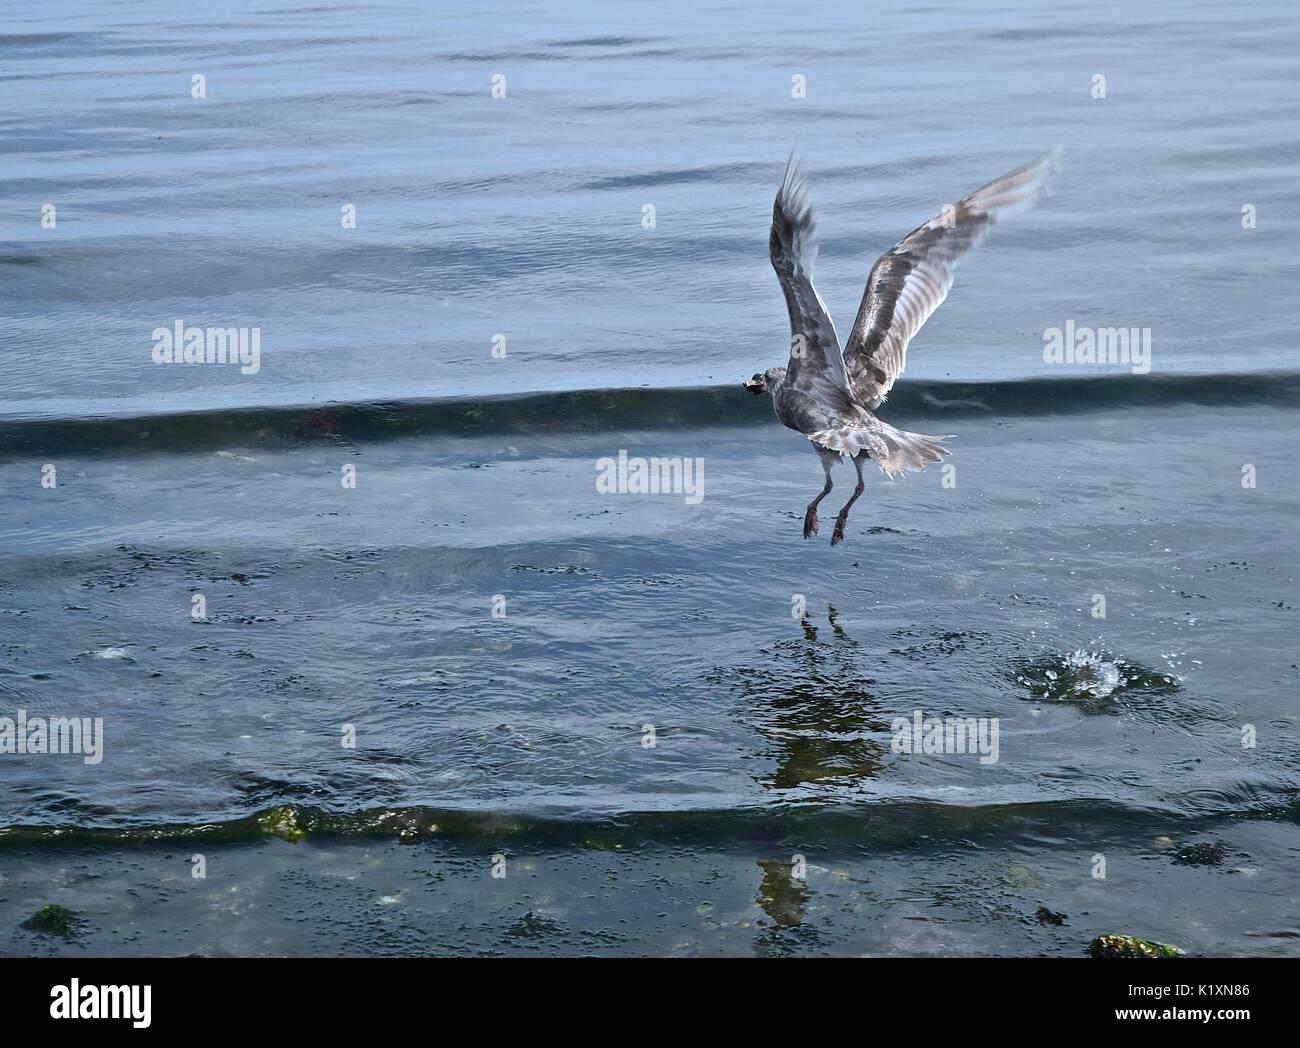 Ebbe am Puget Sound offenbart viele Meeresbewohner, die nächste Mahlzeit für eine Möwe eine hohe Wahrscheinlichkeit. Stockfoto